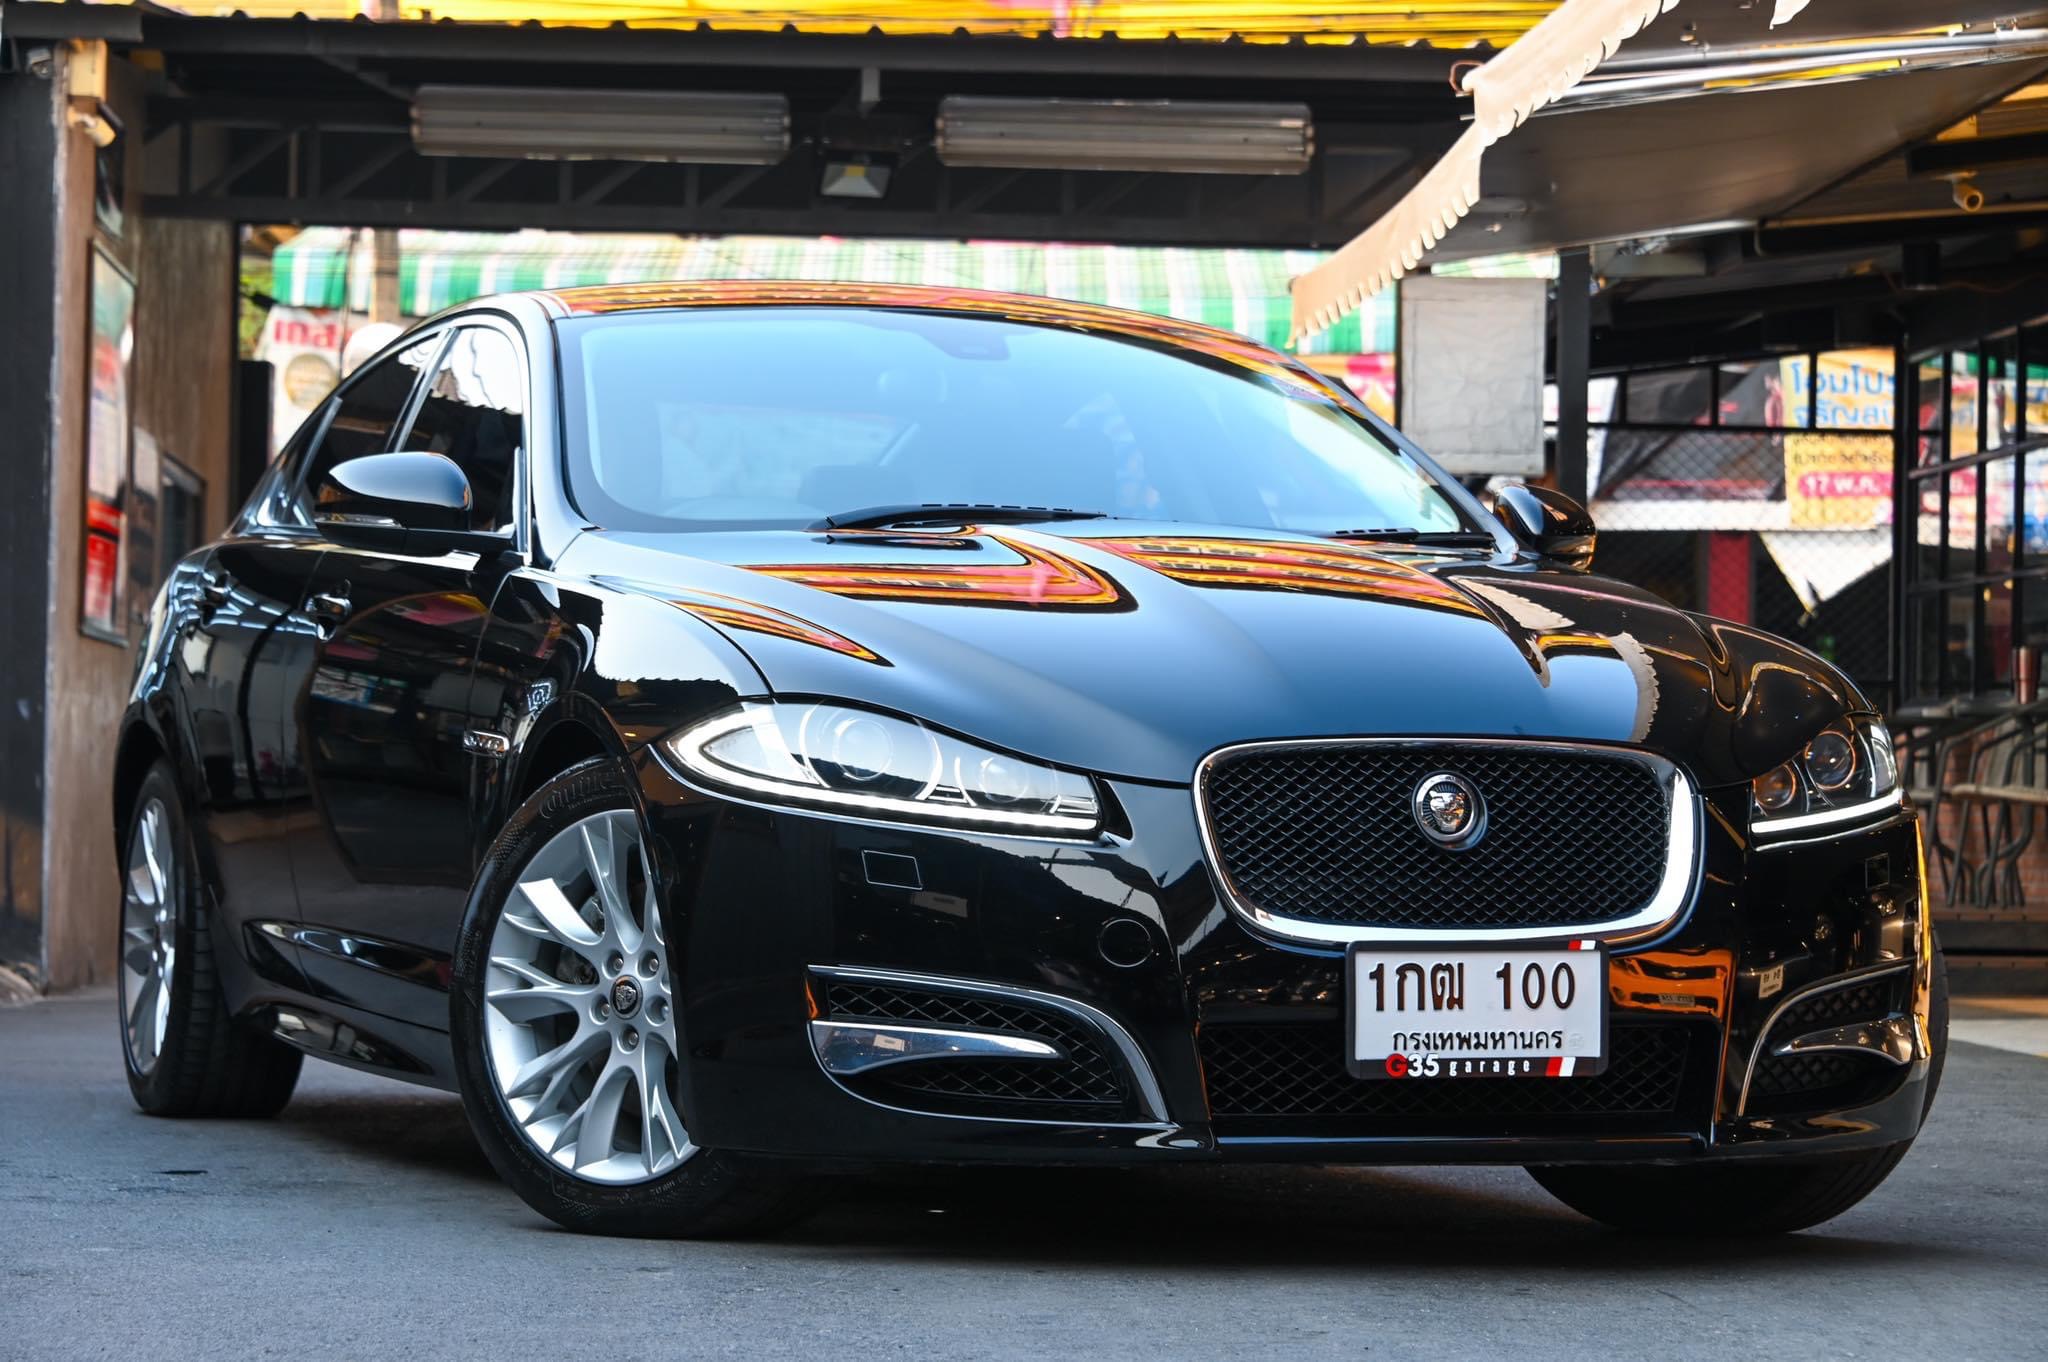 Jaguar XF 2013 สีดำ